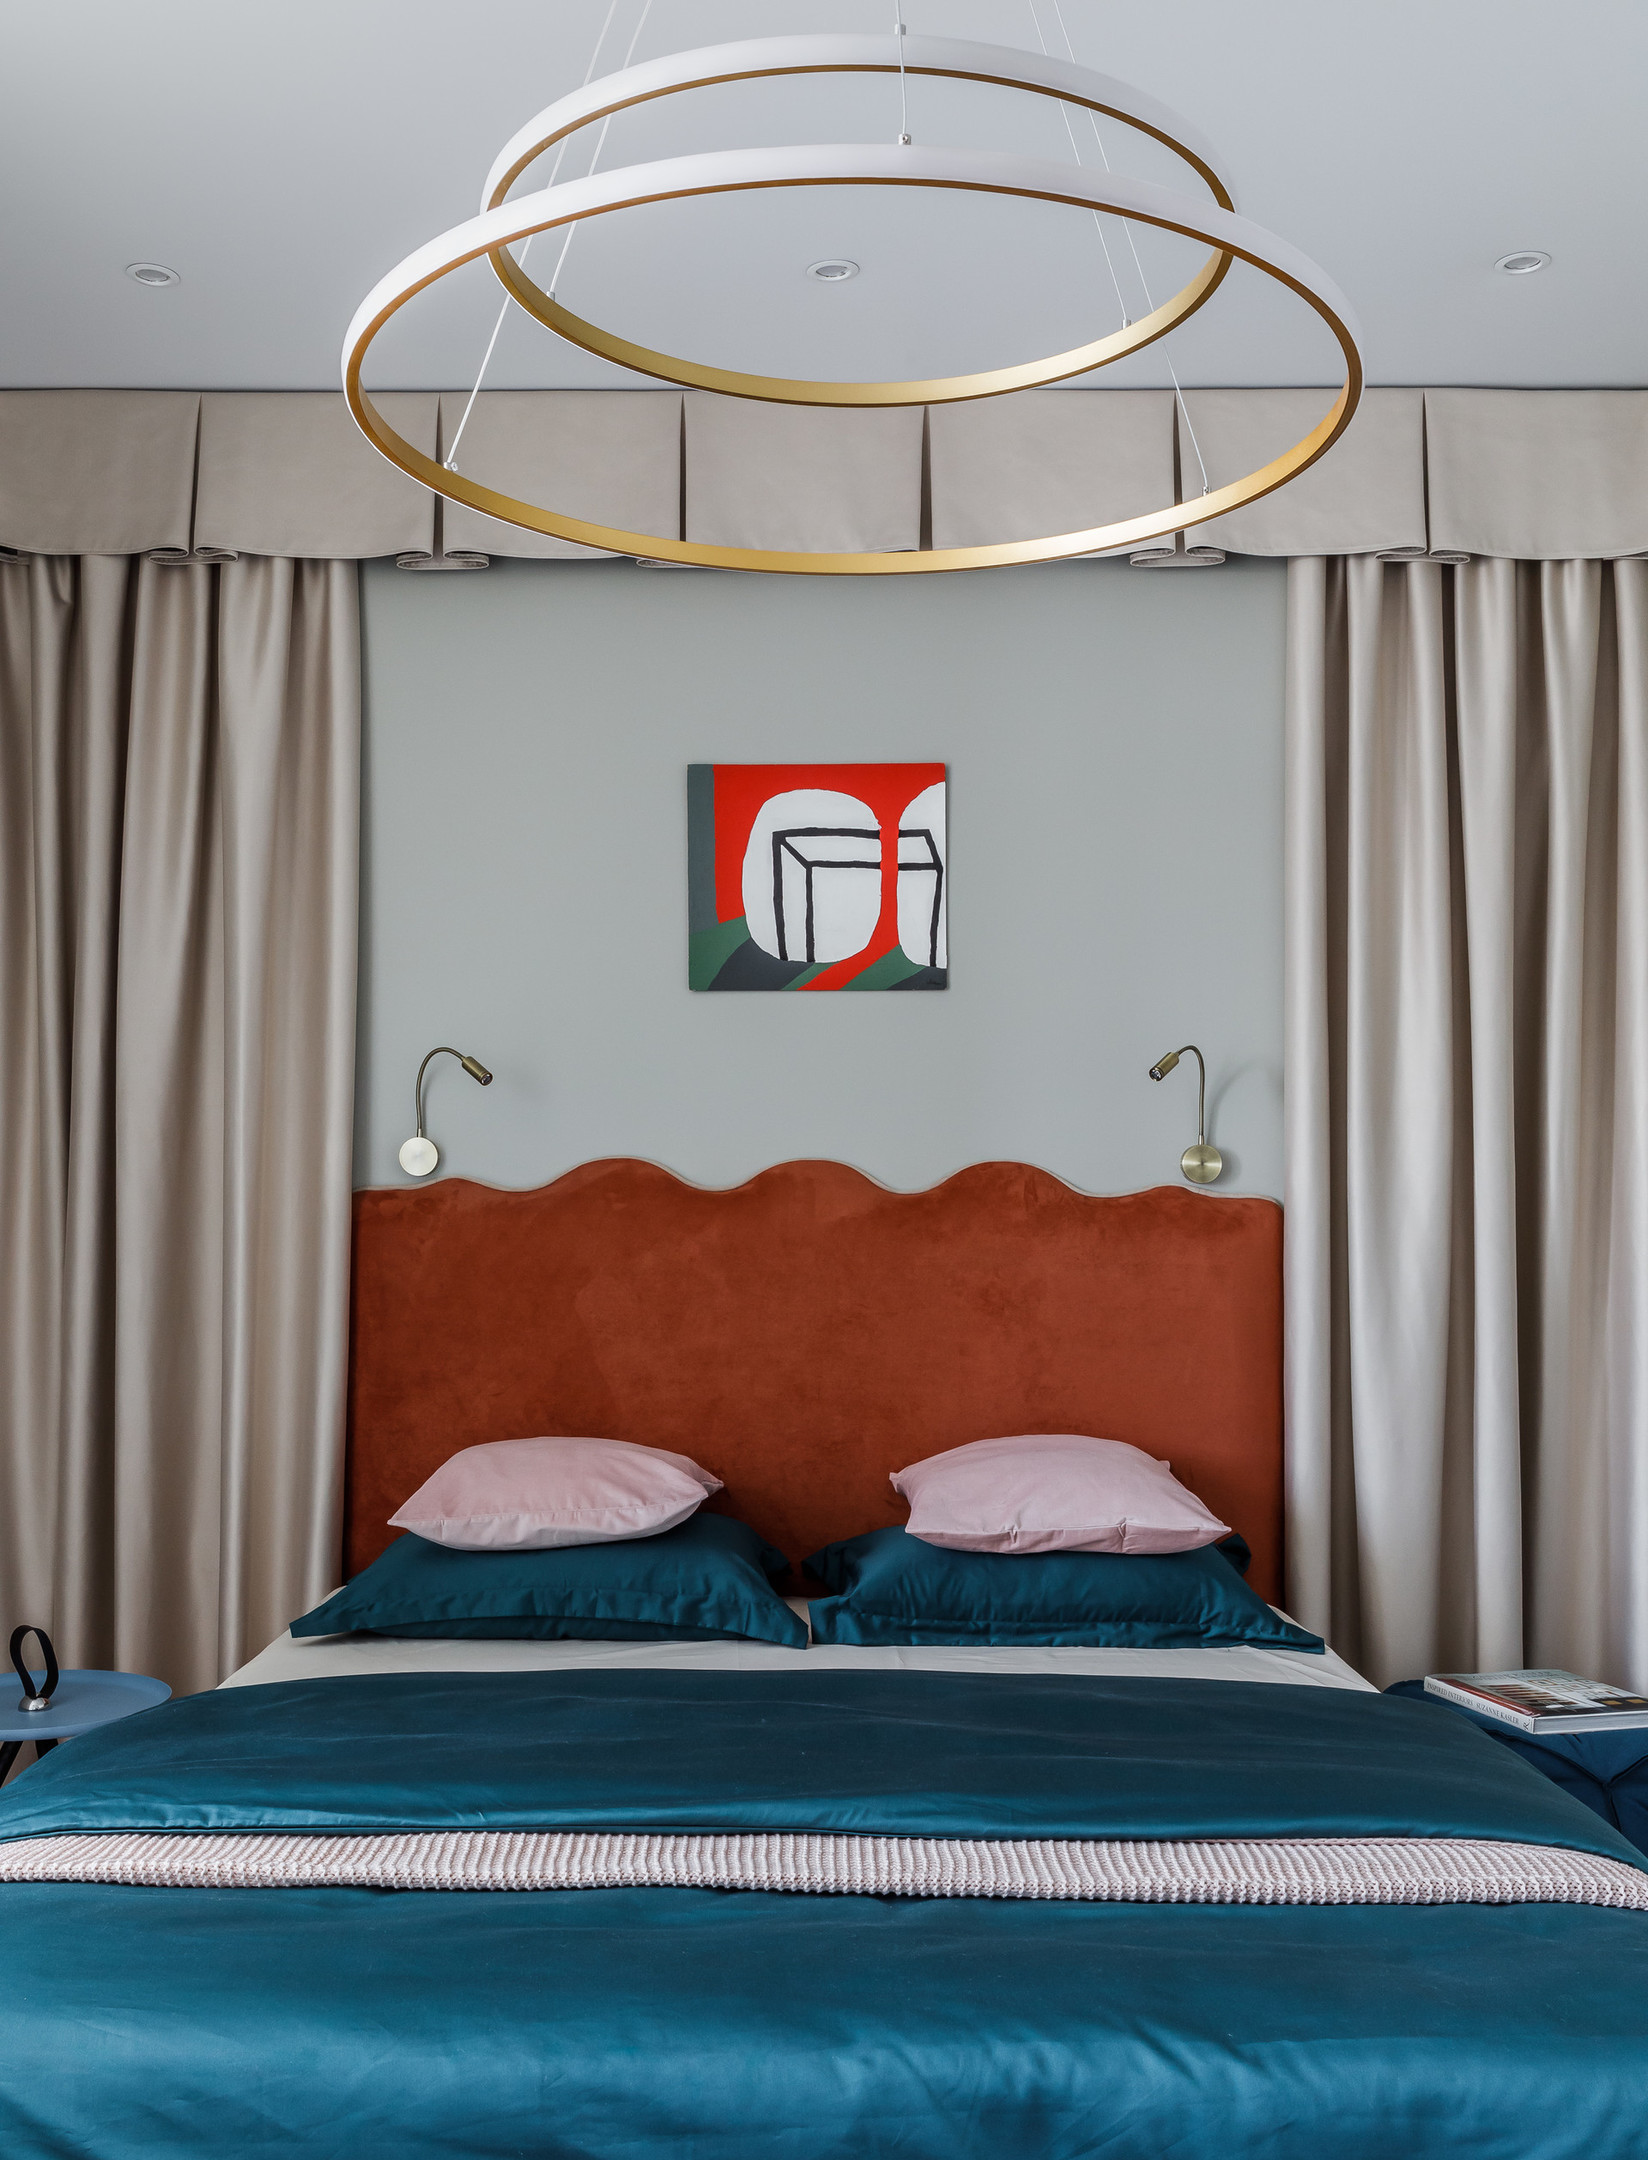 Phòng ngủ bừng sáng không chỉ ở đầu giường màu cam gạch, chăn ga gối sắc xanh coban mà còn ở chiếc đèn trần được tạo nên từ 2 vòng tròn lớn bé khác nhau.